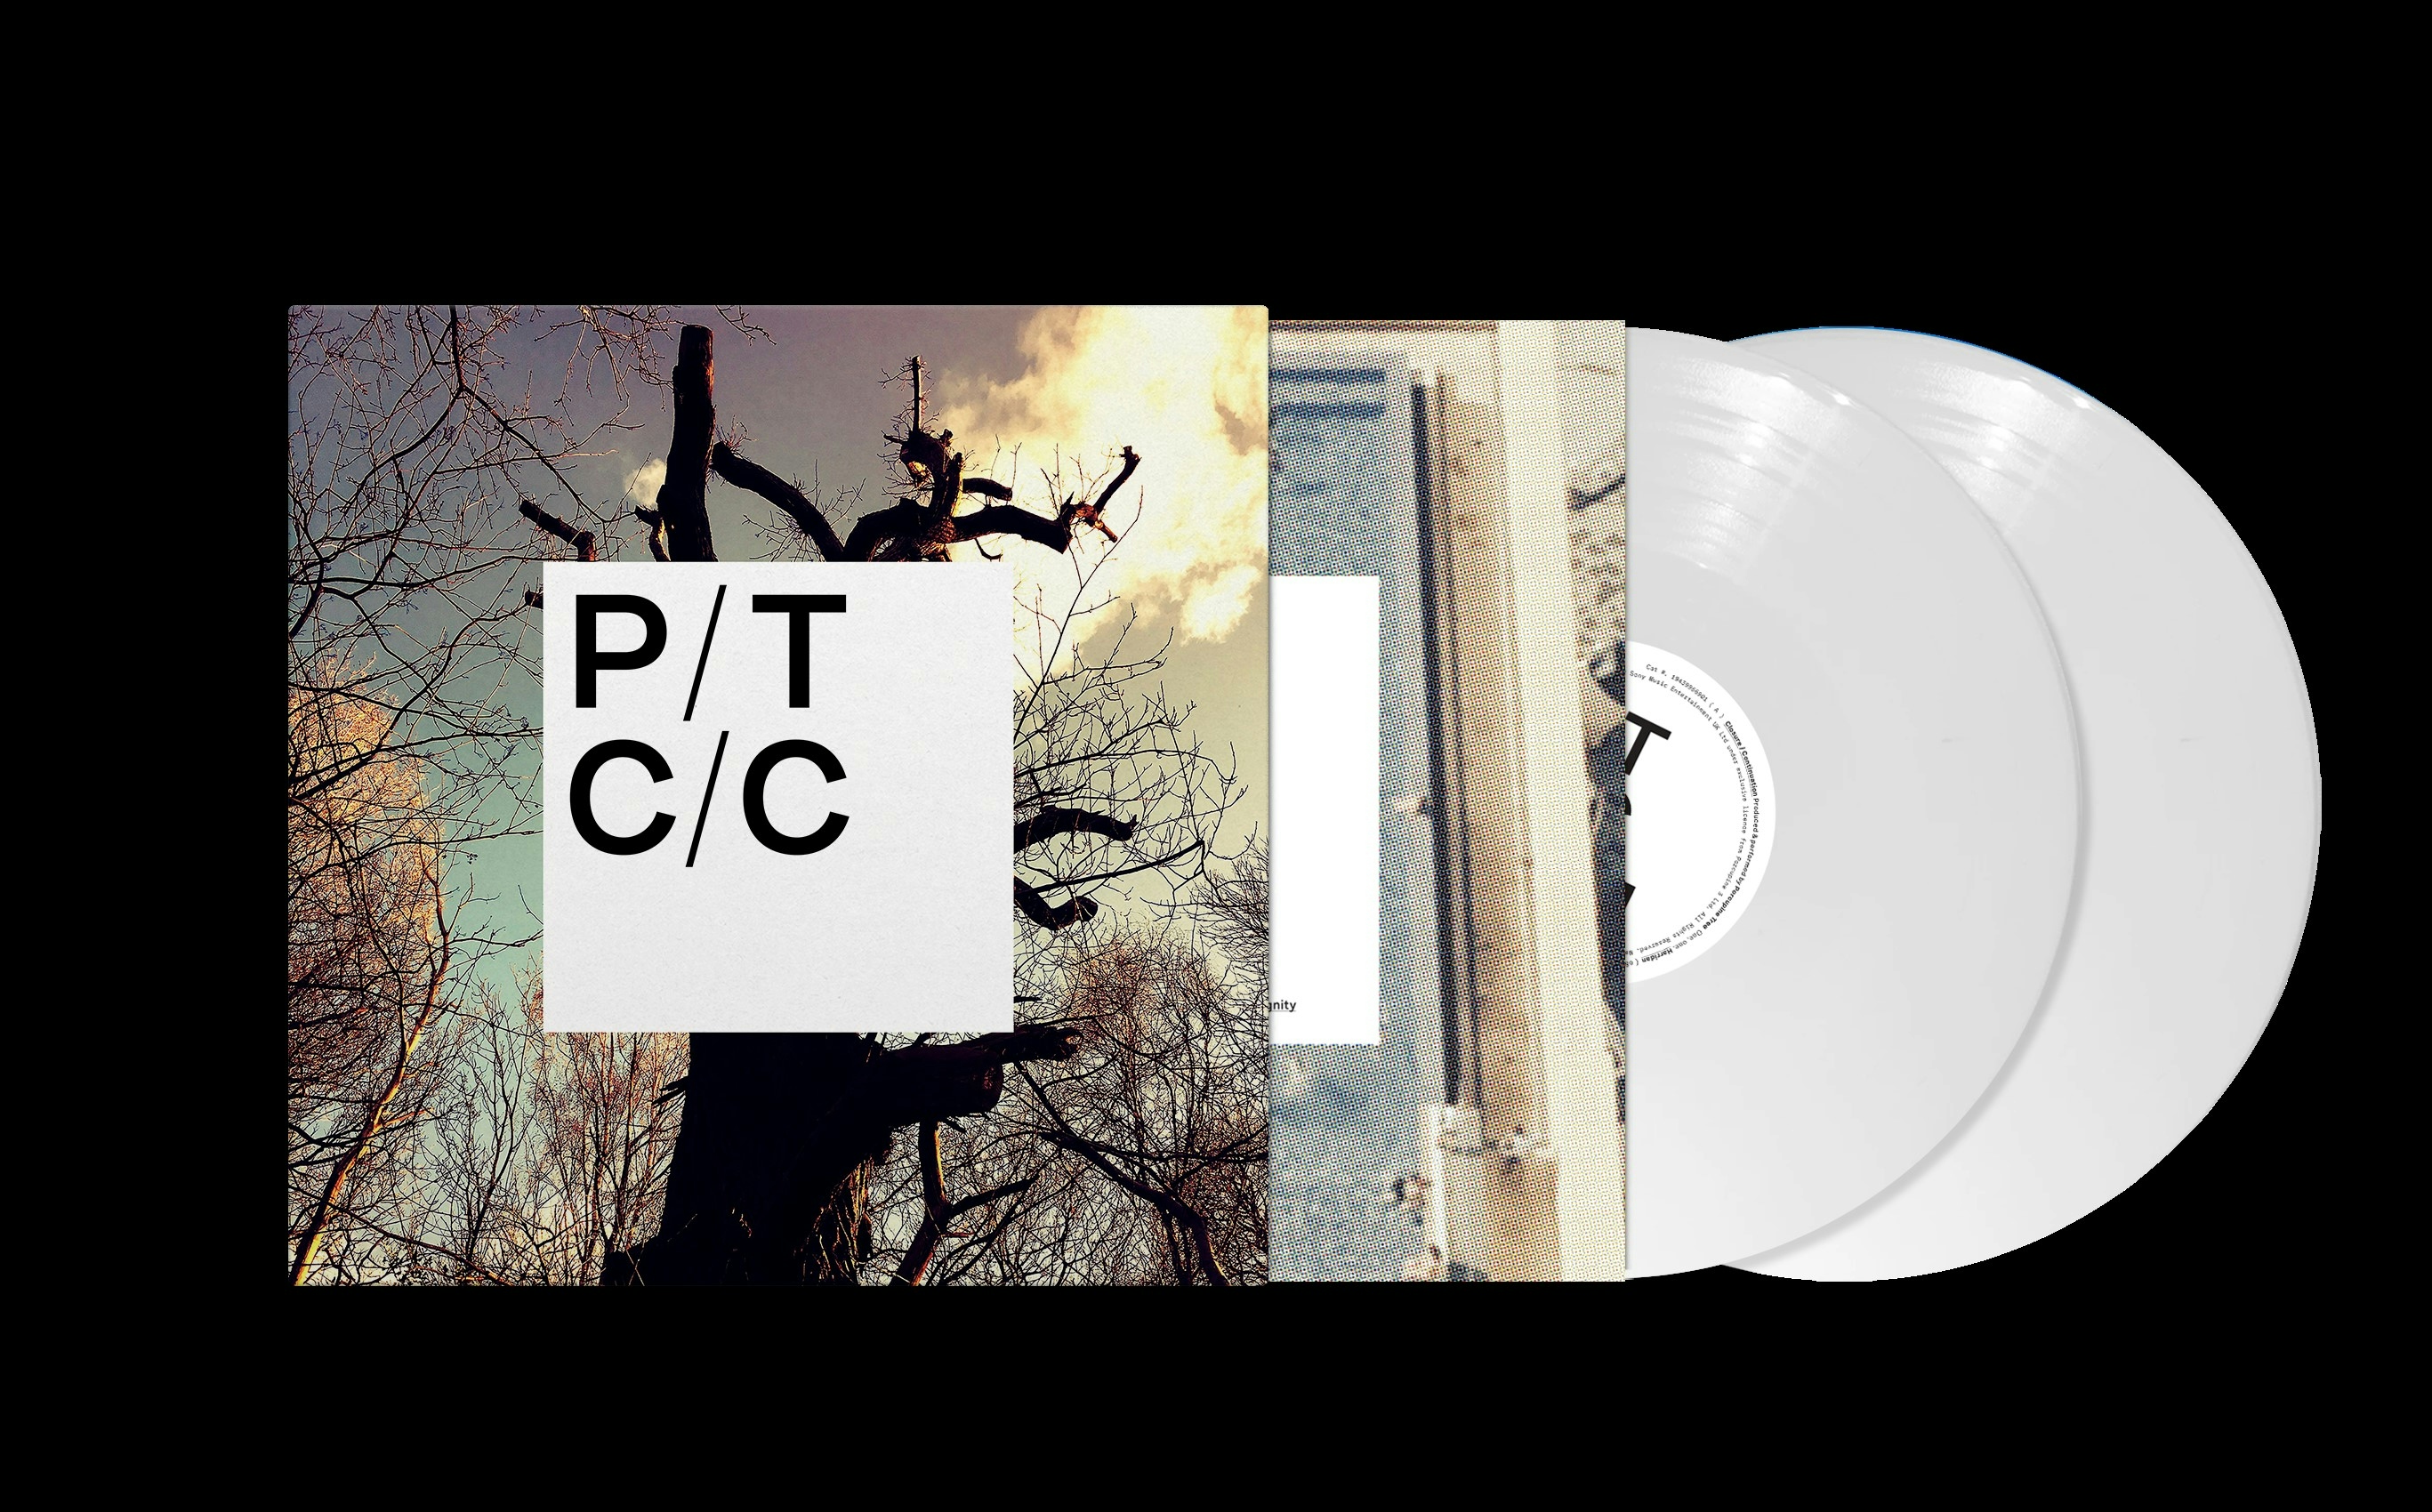 Album artwork for Album artwork for Closure/Continuation by Porcupine Tree by Closure/Continuation - Porcupine Tree